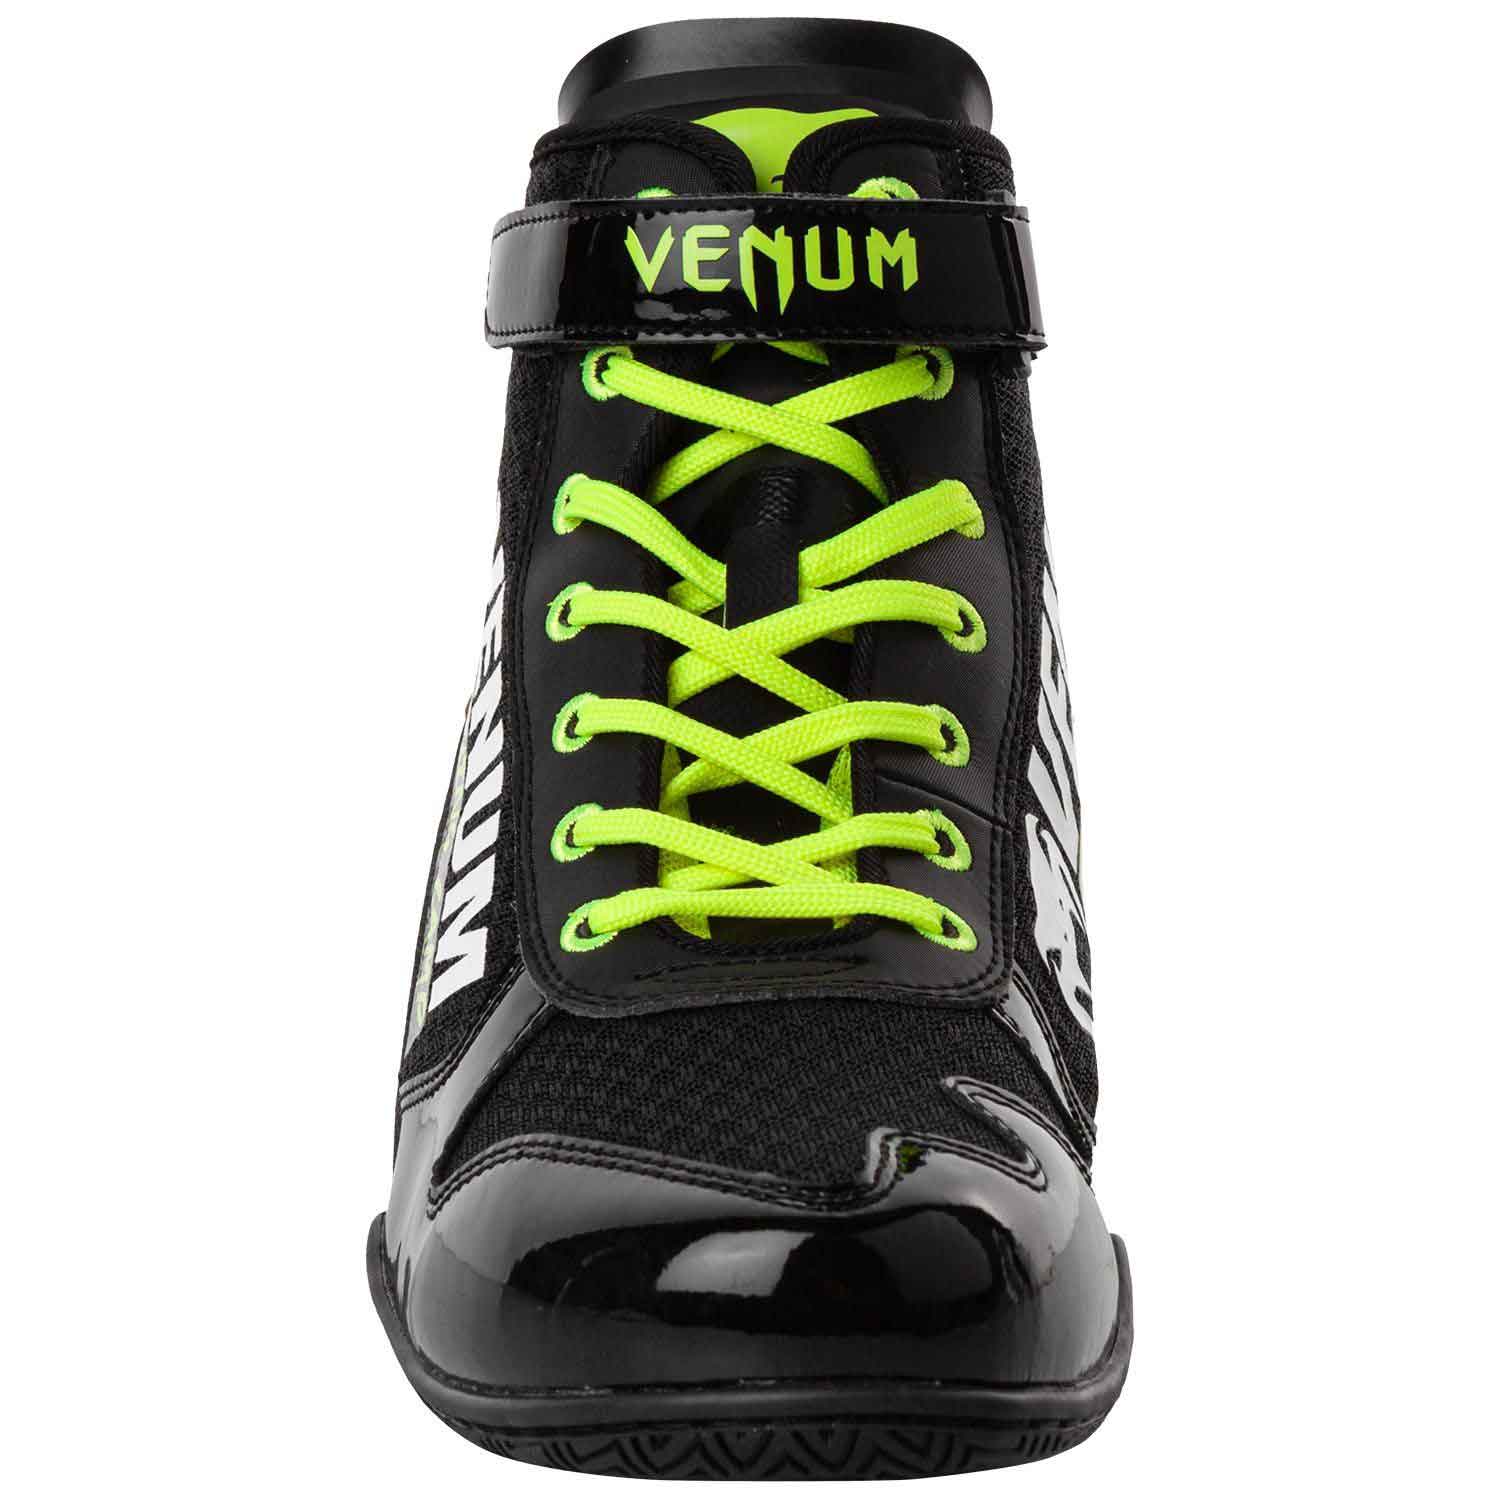 VENUM／ヴェナム　ボクシングシューズ　　GIANT LOW VTC 2 EDITION BOXING SHOES／ジャイアント・ロー VTC 2 エディション ボクシングシューズ（黒／ネオイエロー）